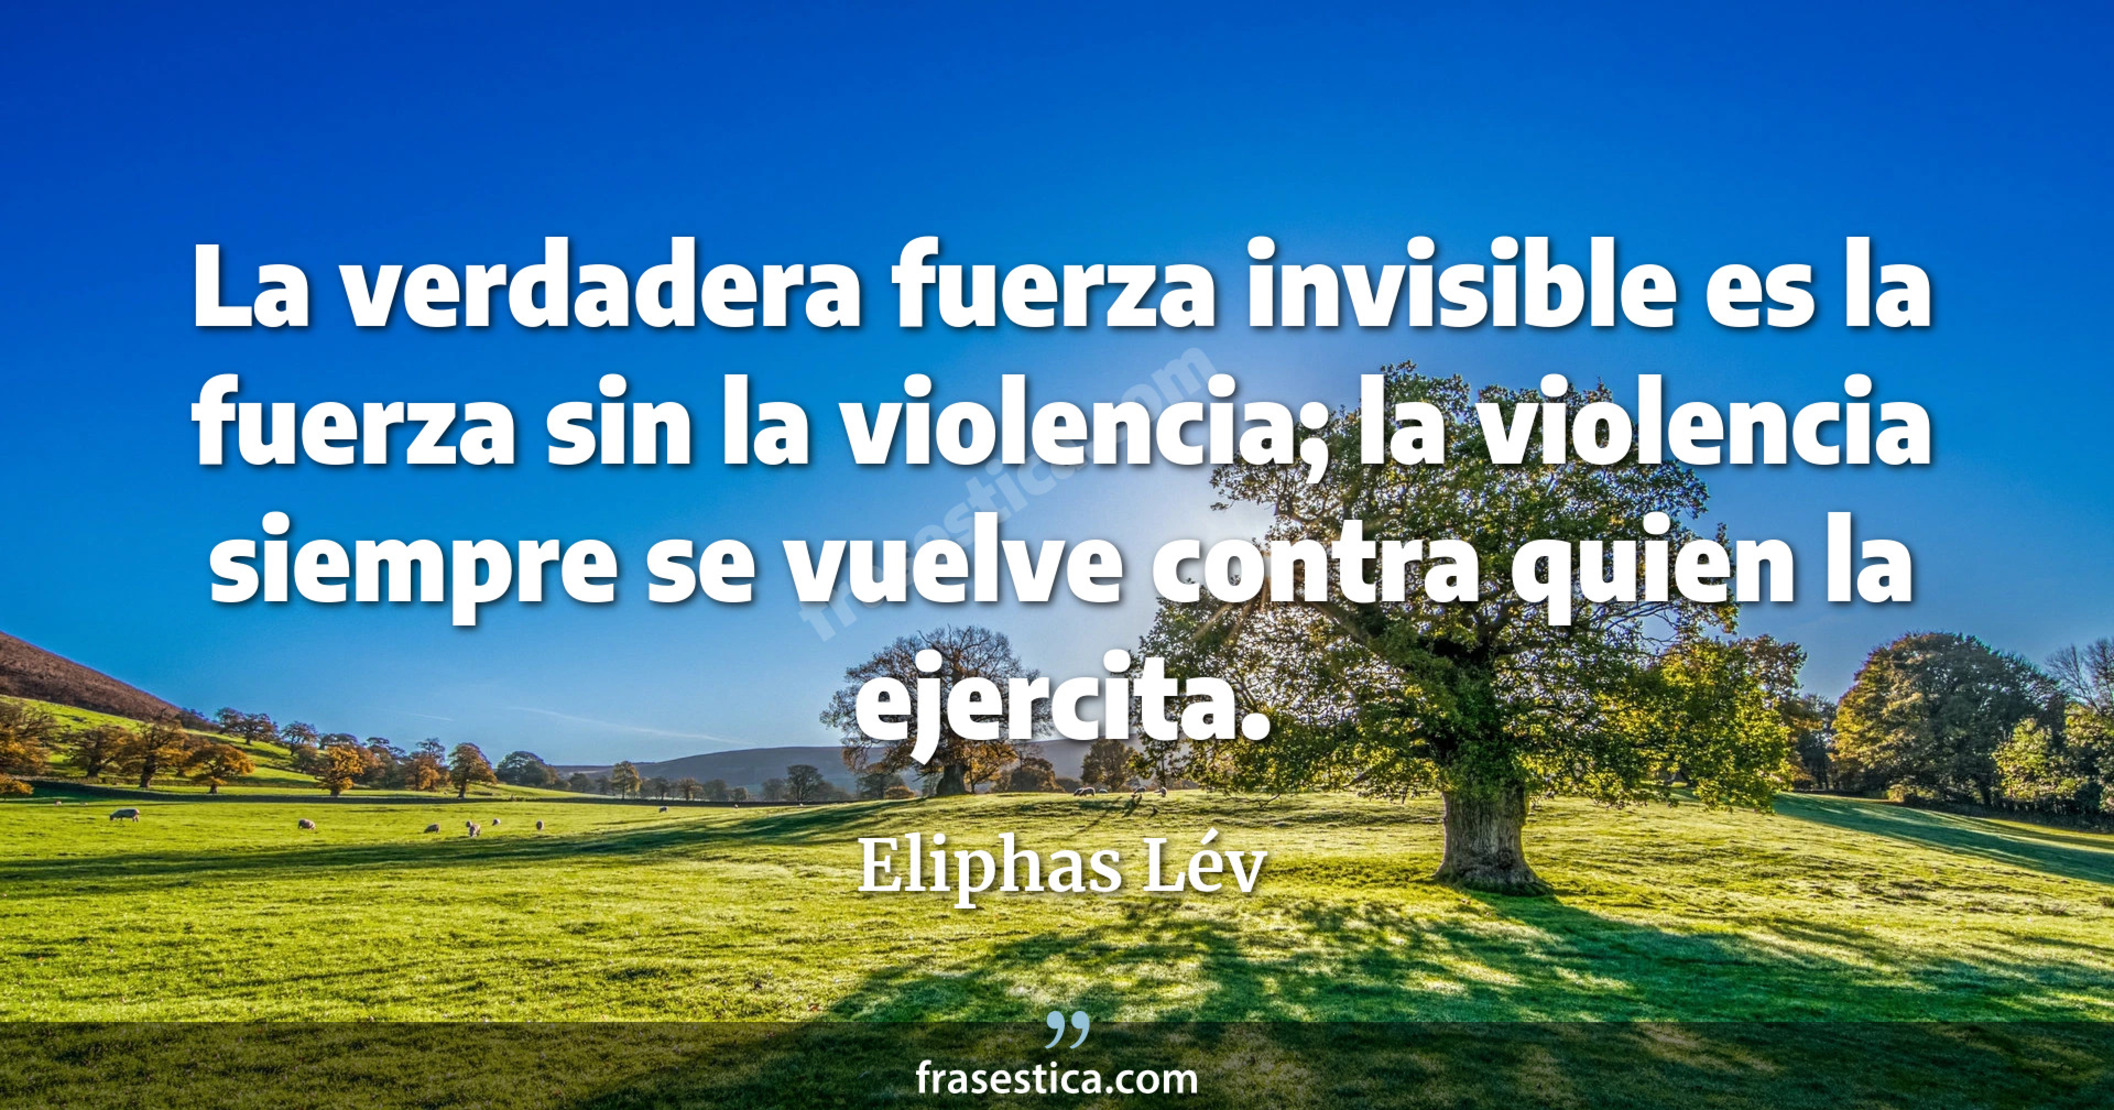 La verdadera fuerza invisible es la fuerza sin la violencia; la violencia siempre se vuelve contra quien la ejercita. - Eliphas Lév